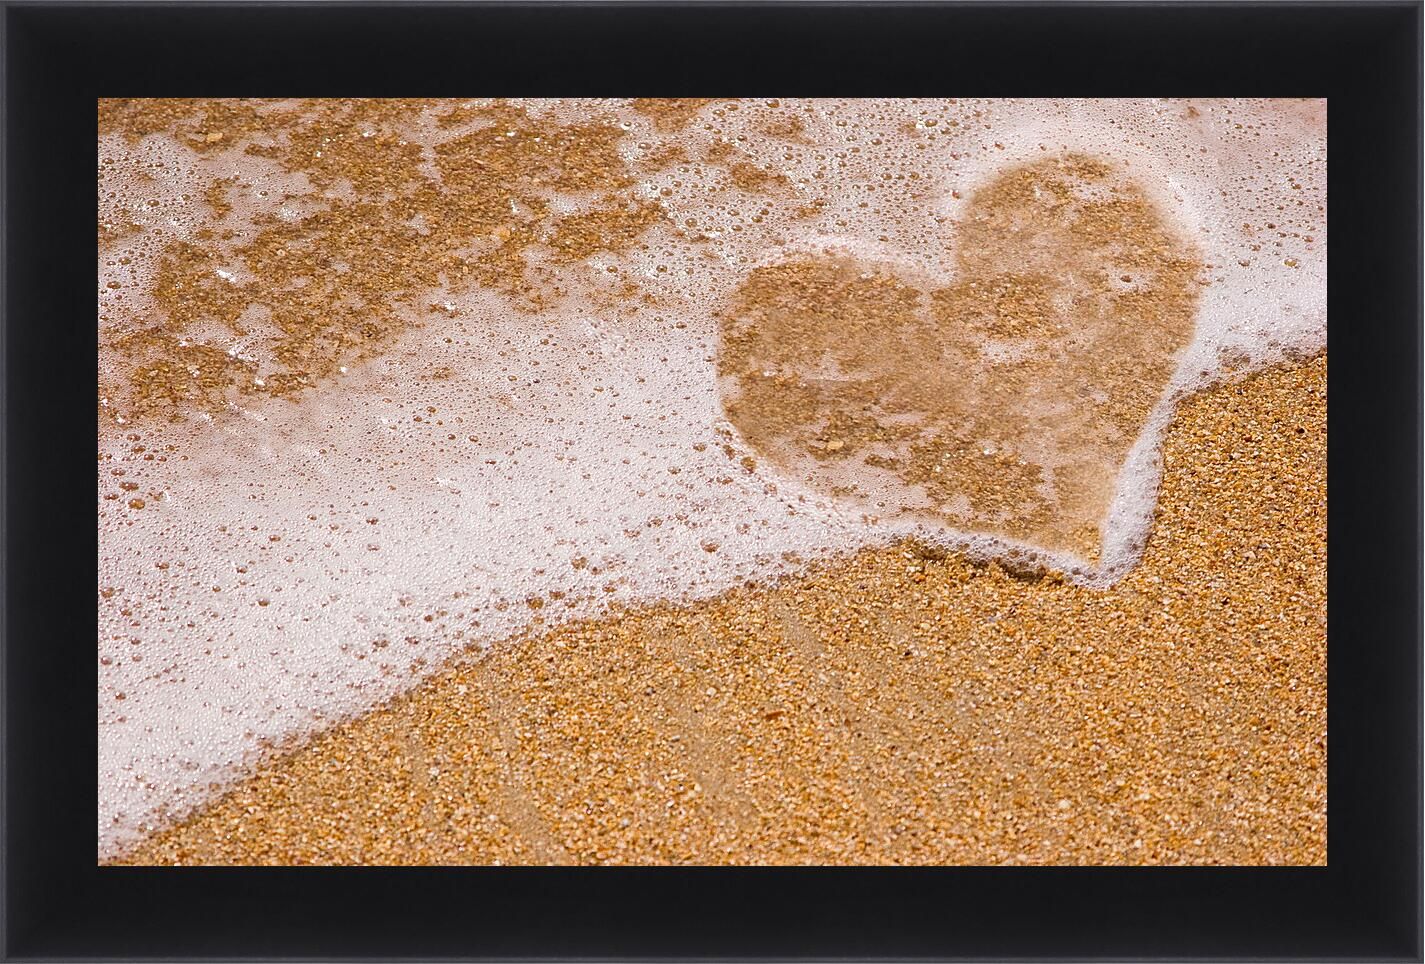 Блеск песка. Цитаты стук сердец влюбленных. Бутылка в виде сердца с песком. С перебитыми сердцами и жизненным